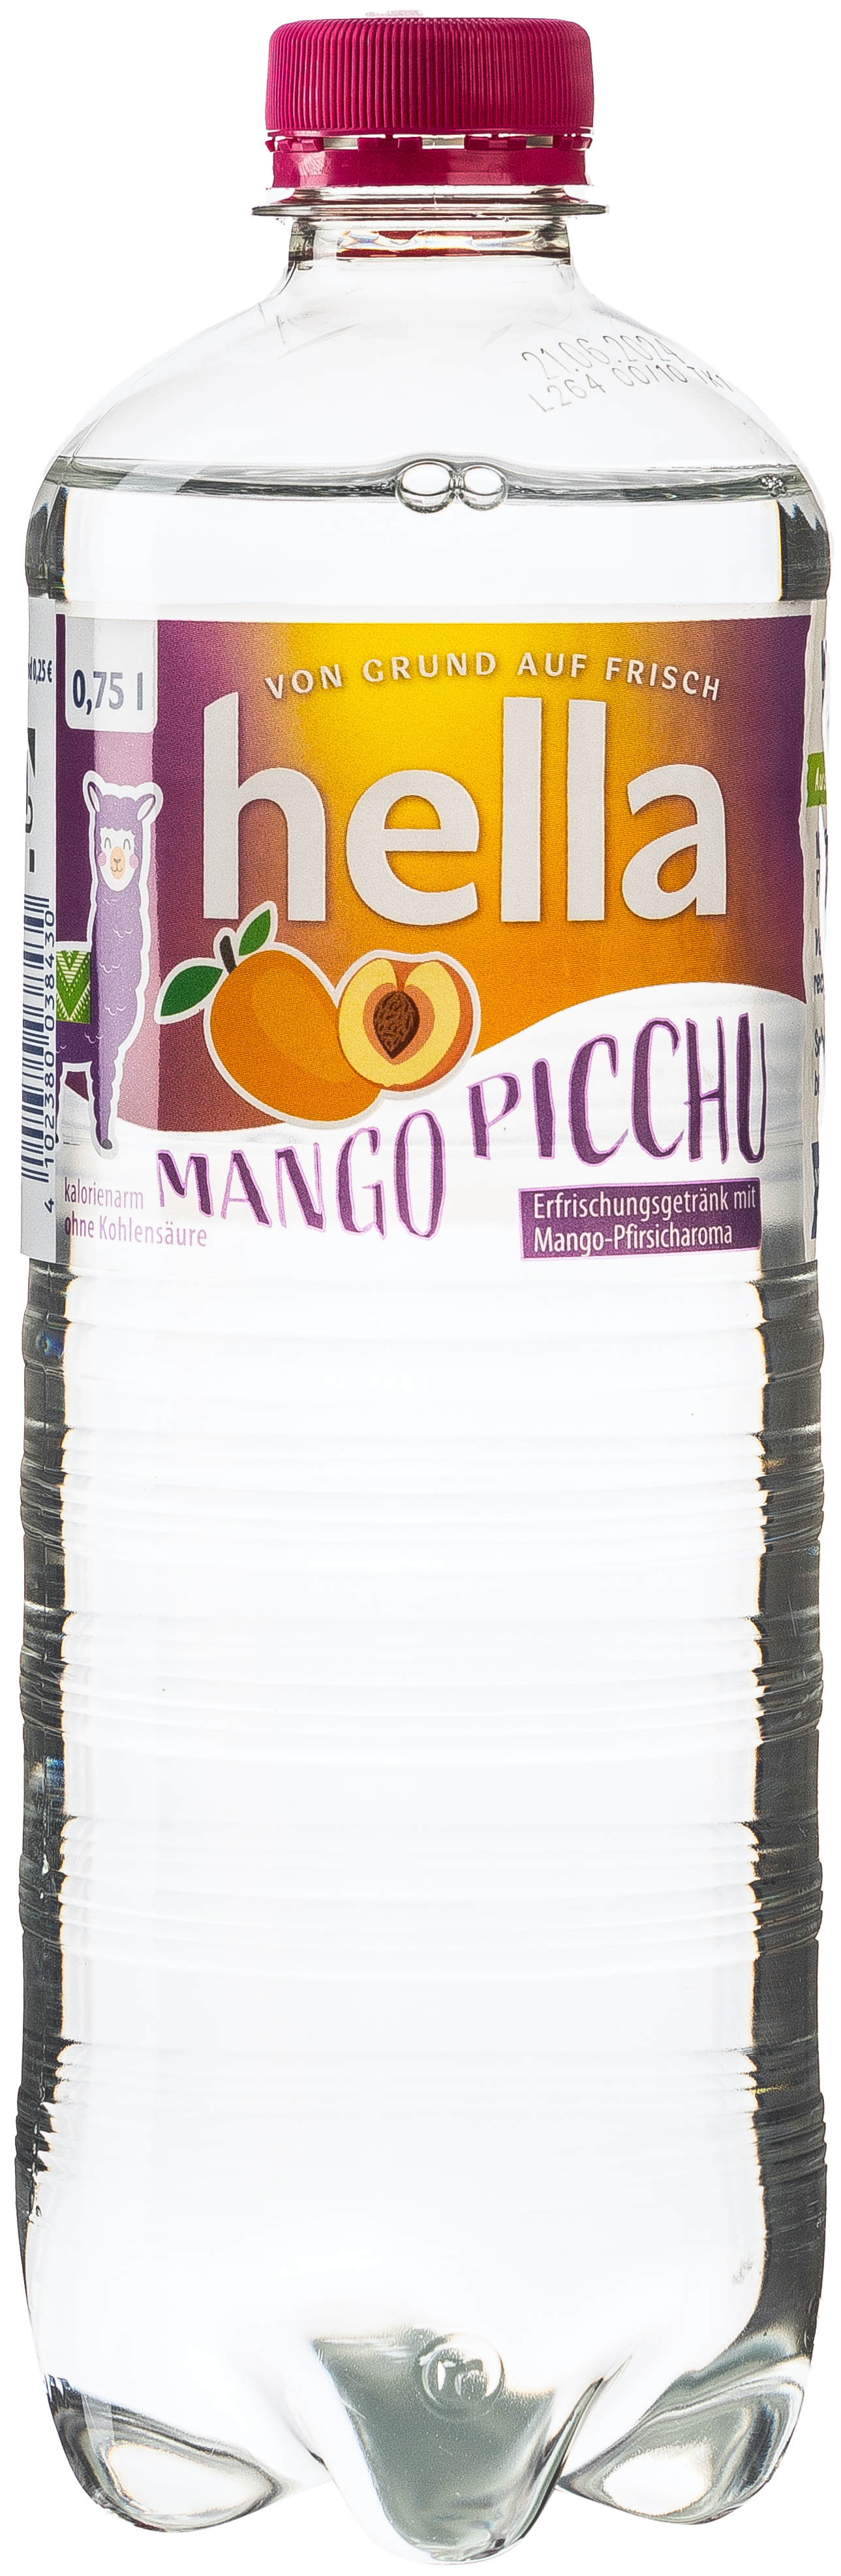 hella Mango Picchu 0,75L EINWEG